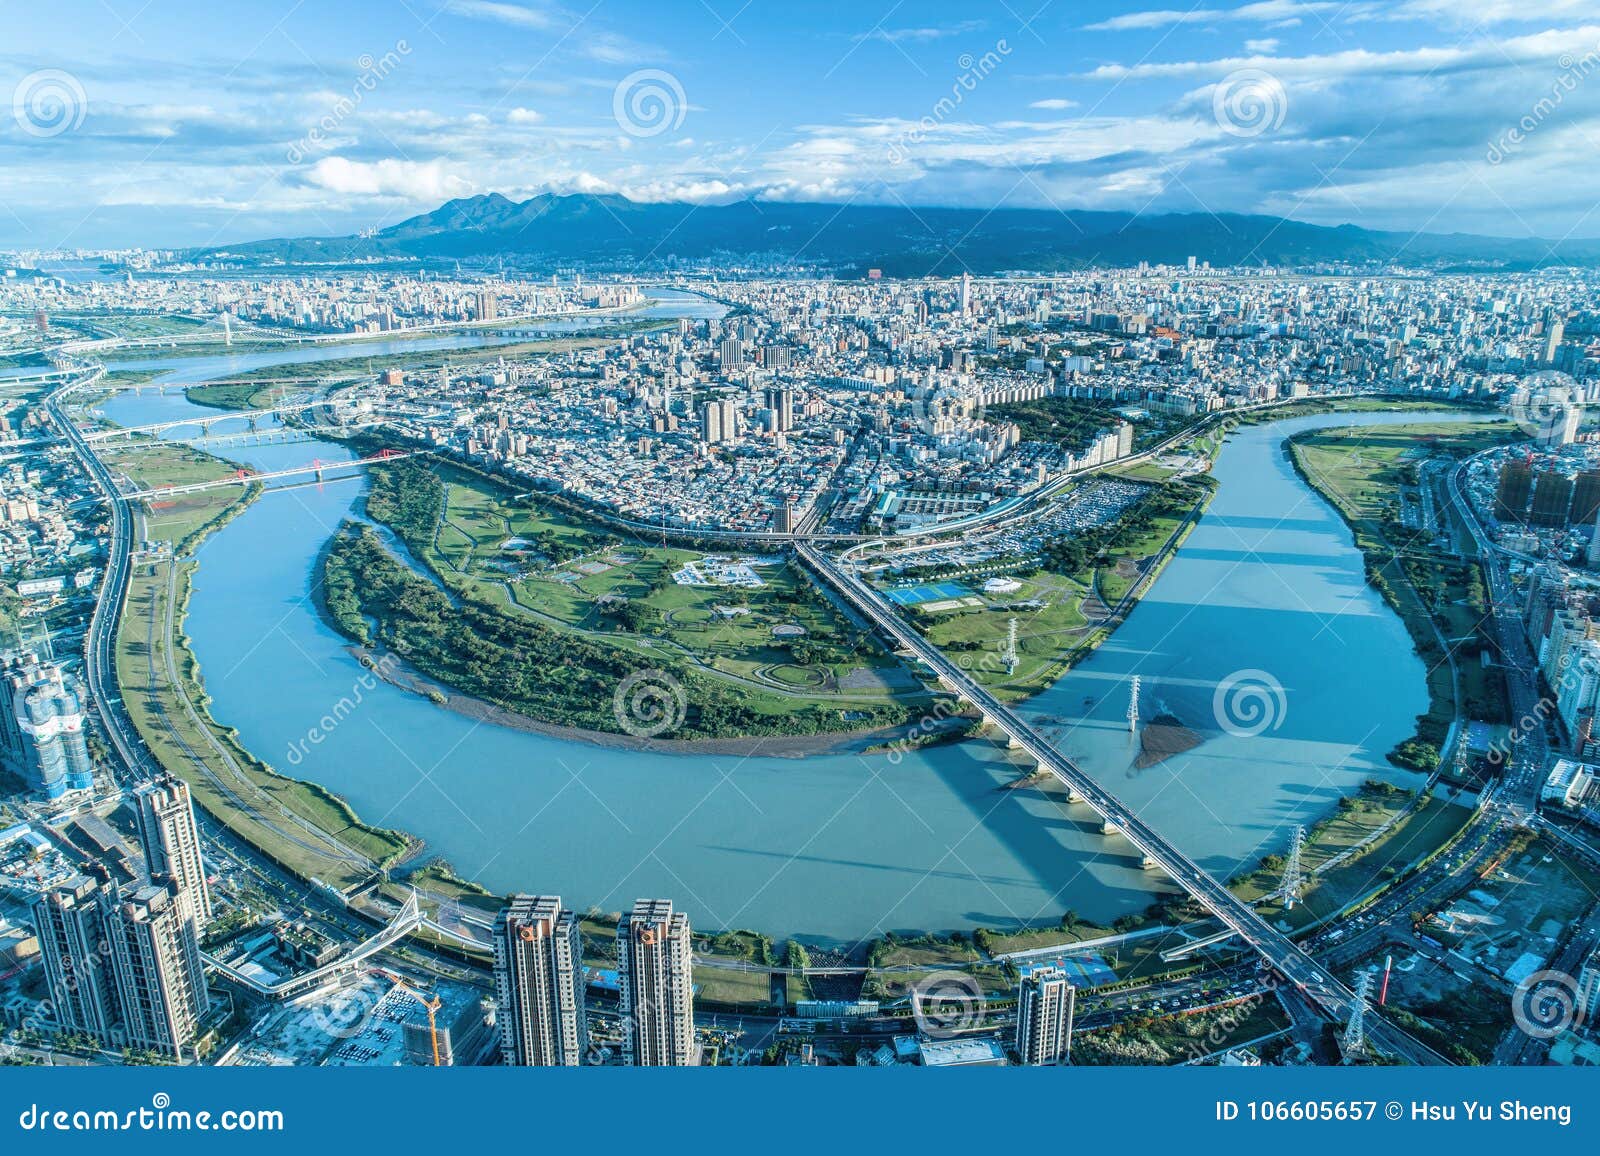 taipei city aerial view